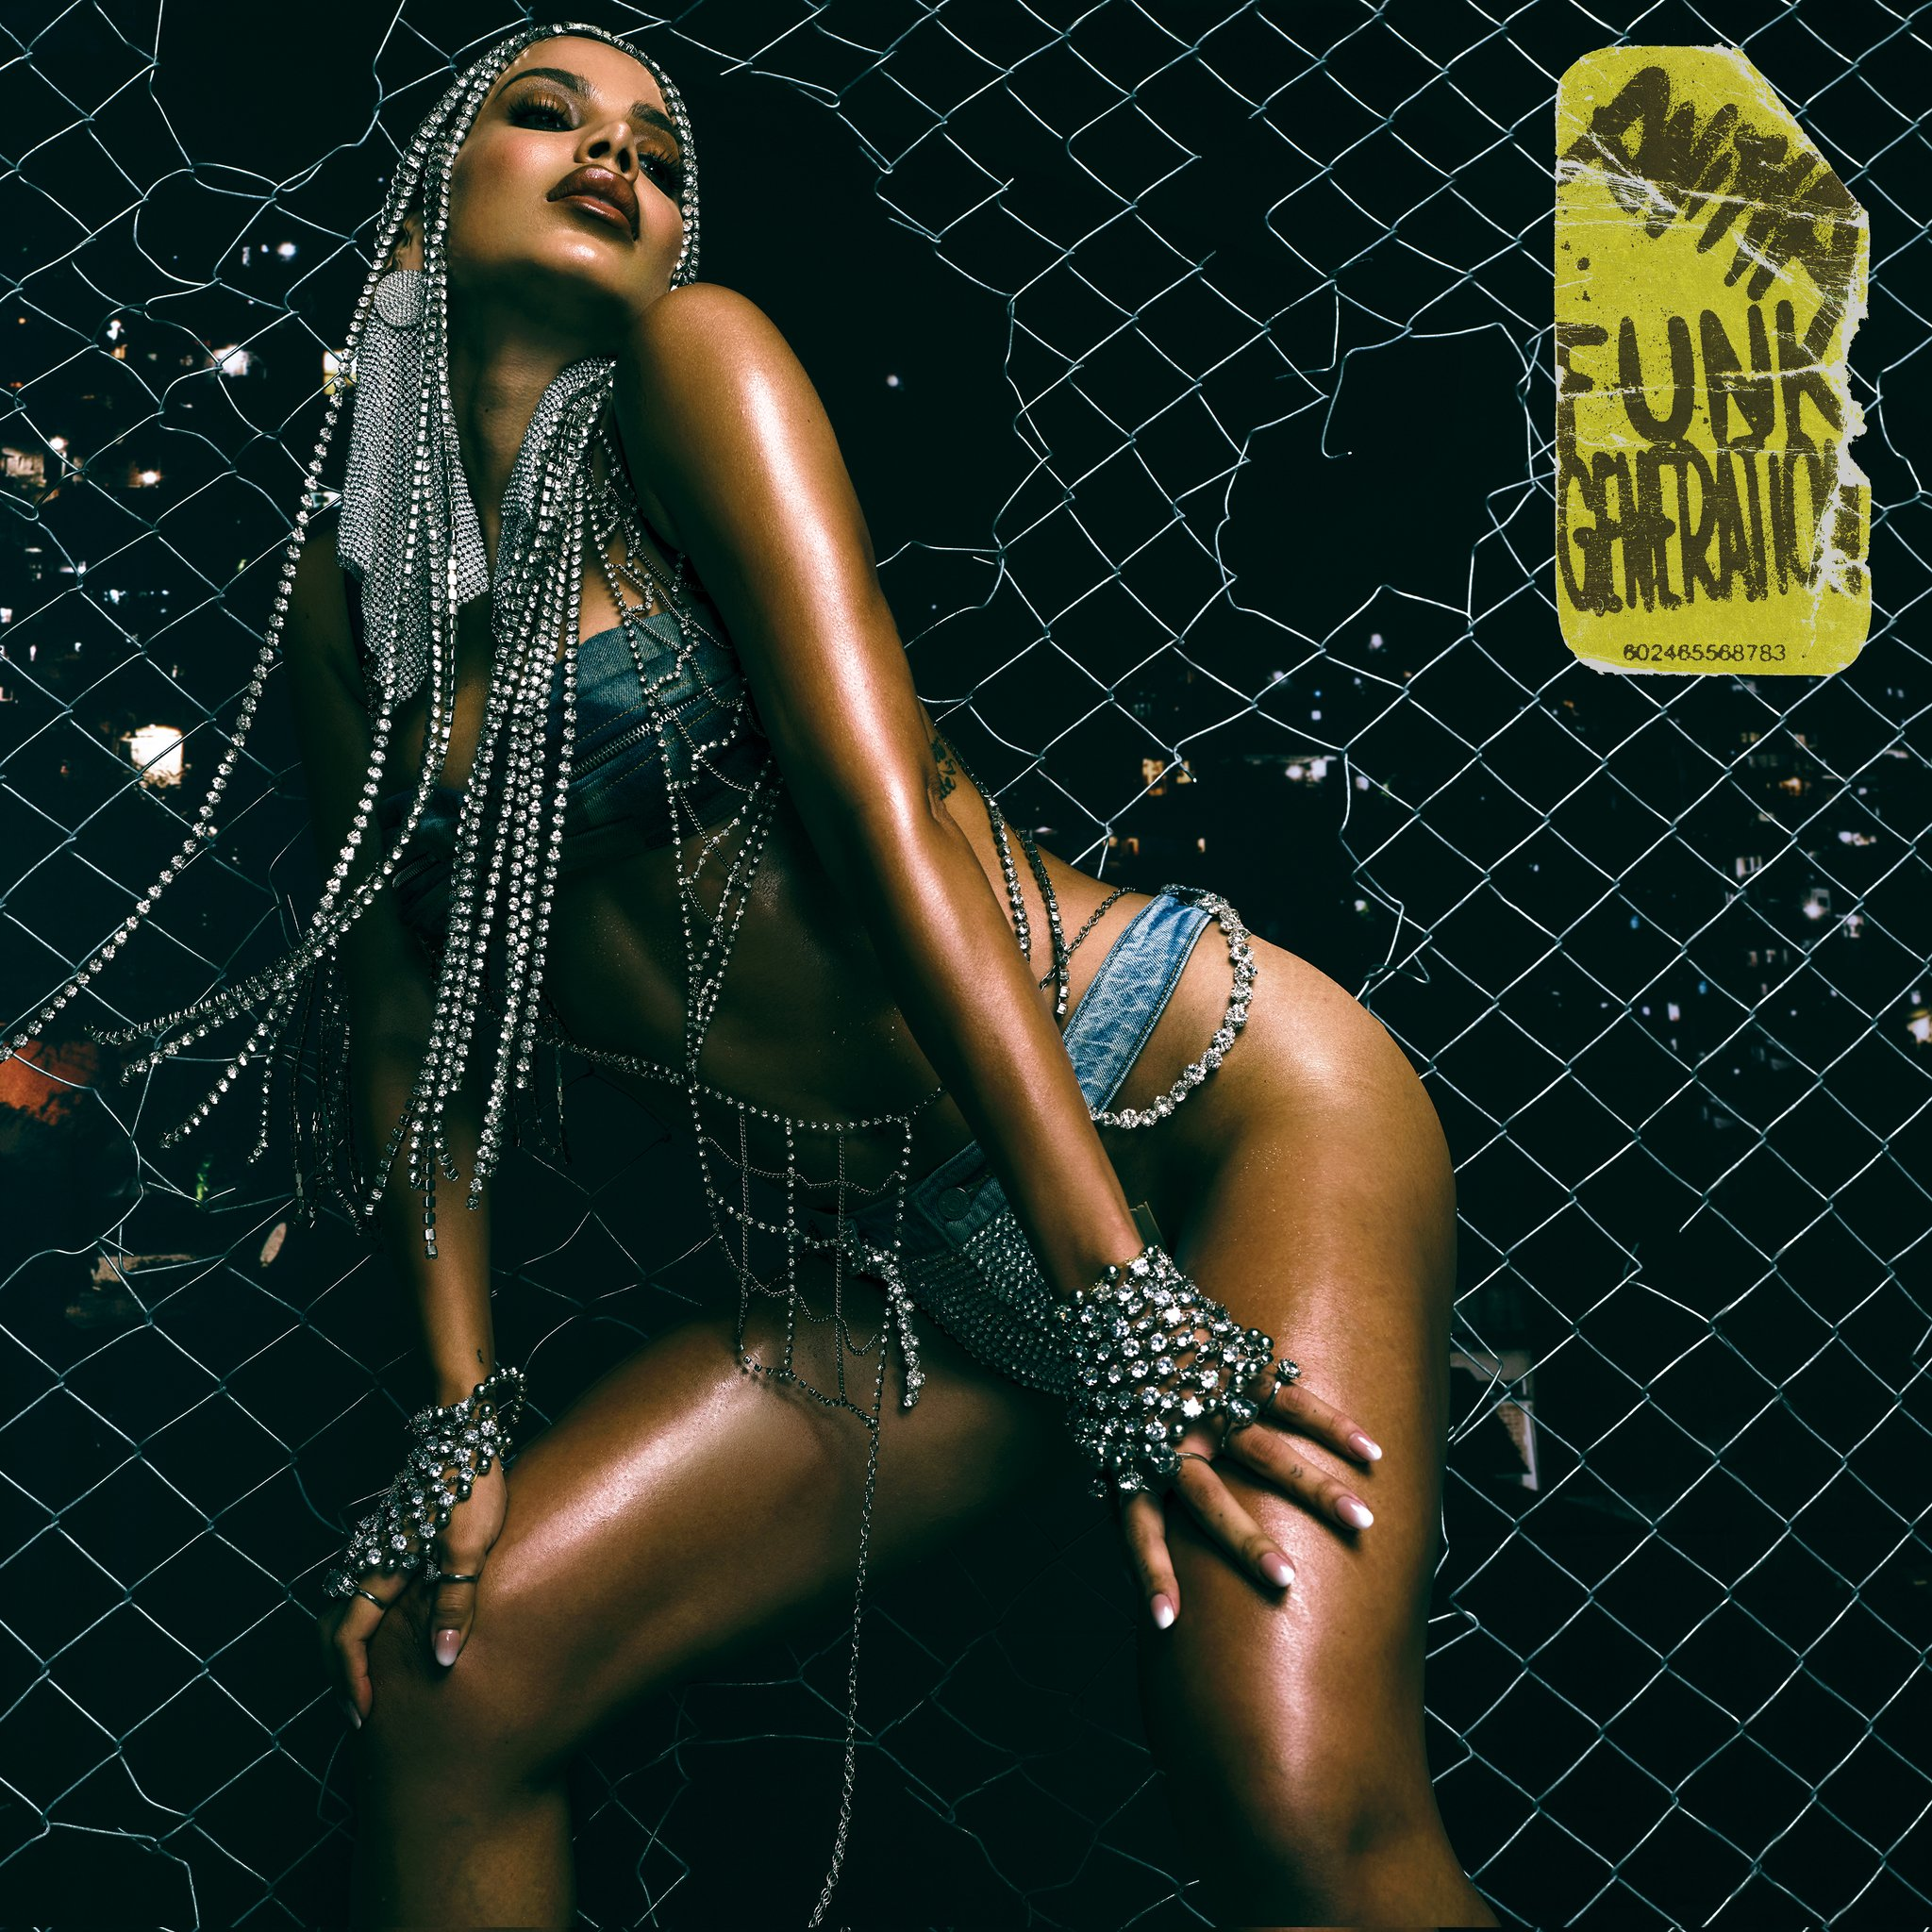 Anitta revela capa de ‘Funk generation’, álbum em que reprocessa o ‘batidão’ carioca com os códigos do pop gringo